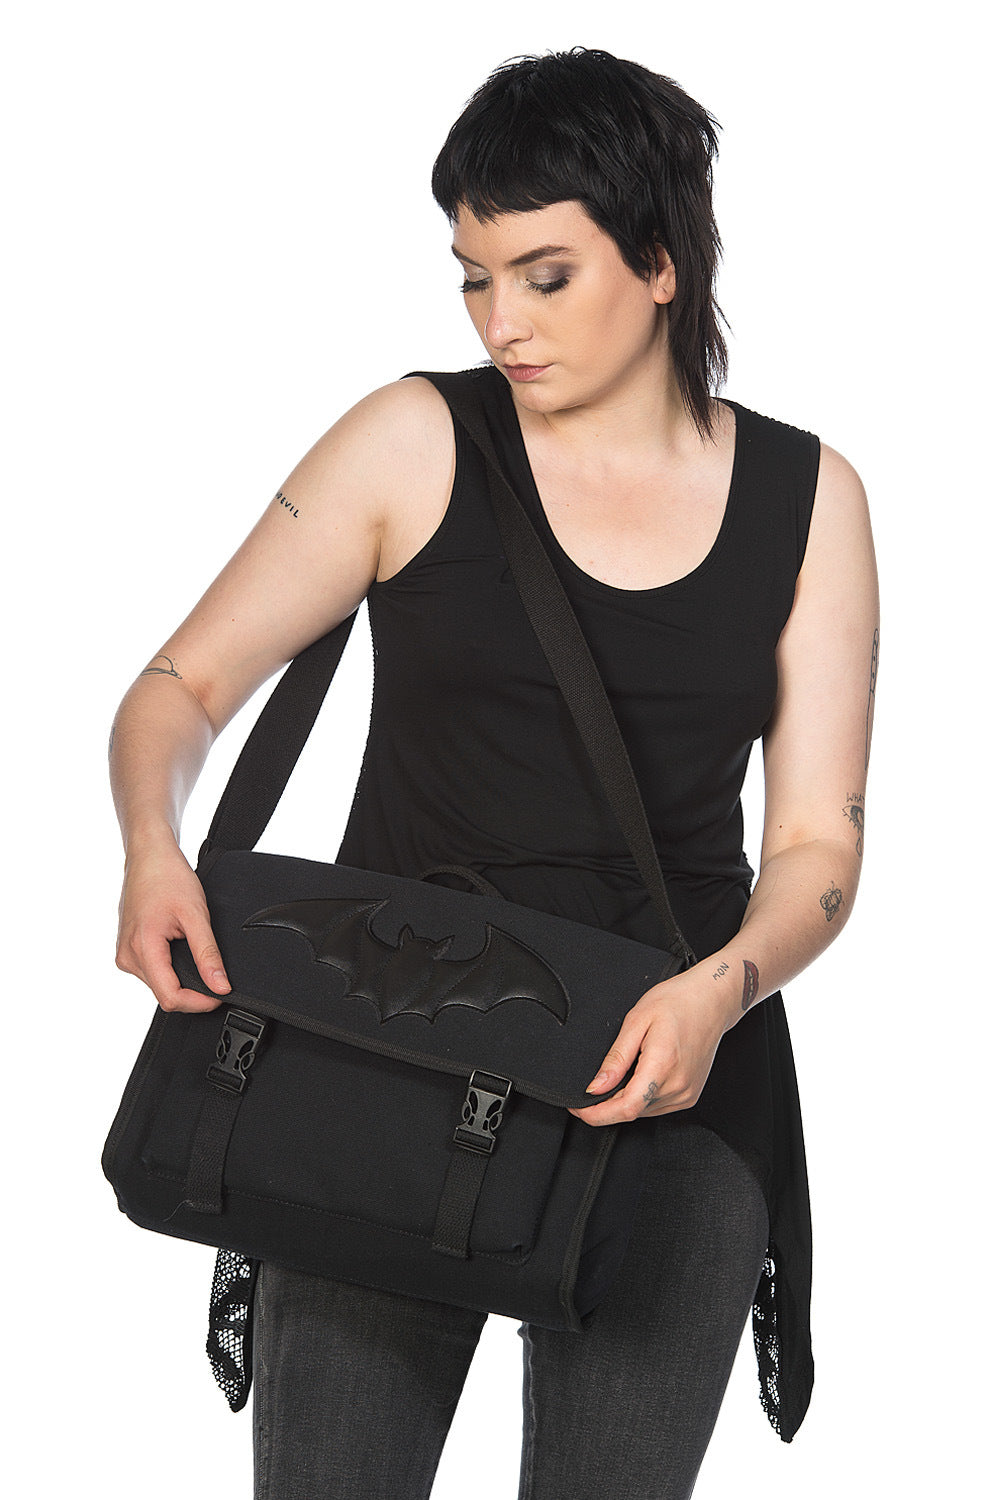 Banned Alternative - Tenebris Black Shoulder Bag - Buy Online Australia